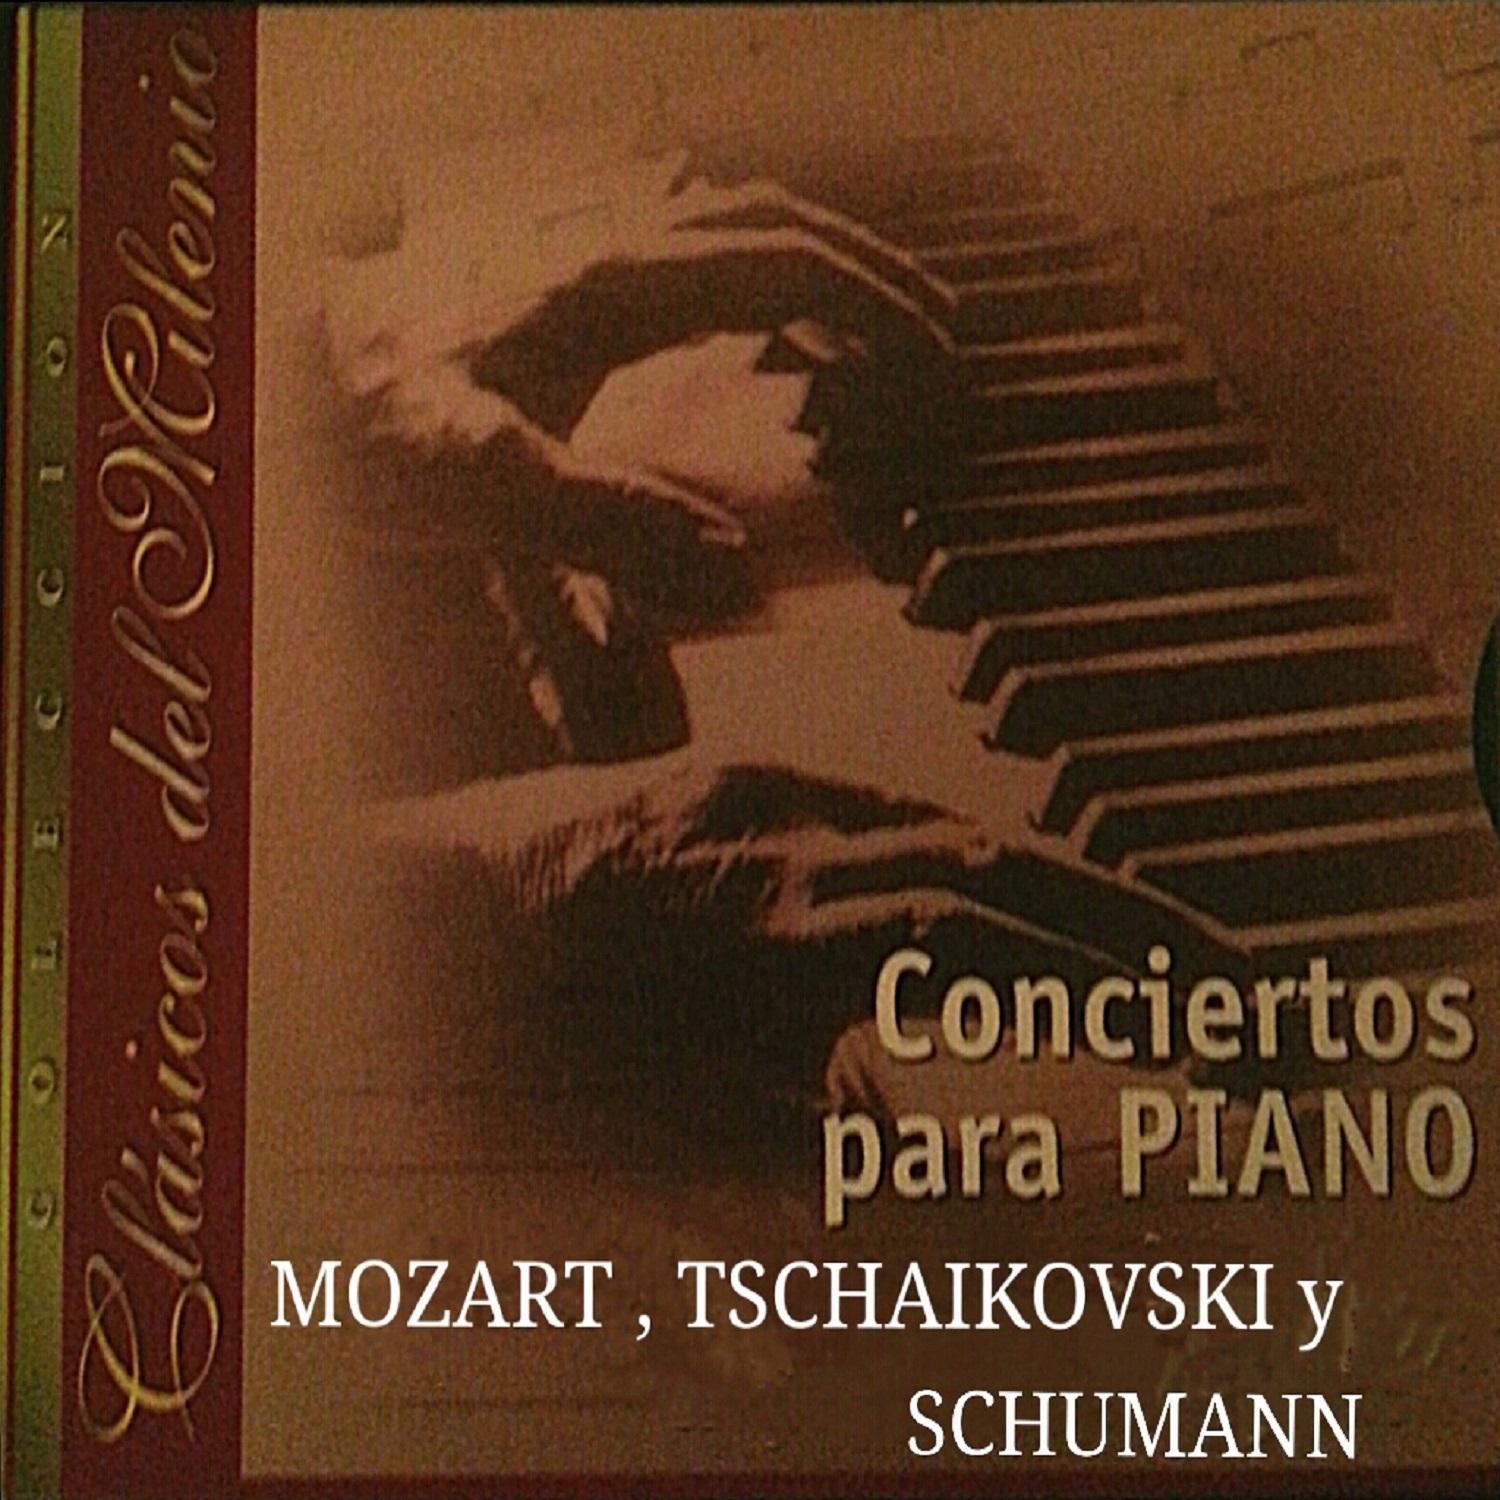 Clásicos del Milenio, Concierto para Piano, Mozart, Tschaikovsky y Schumann专辑